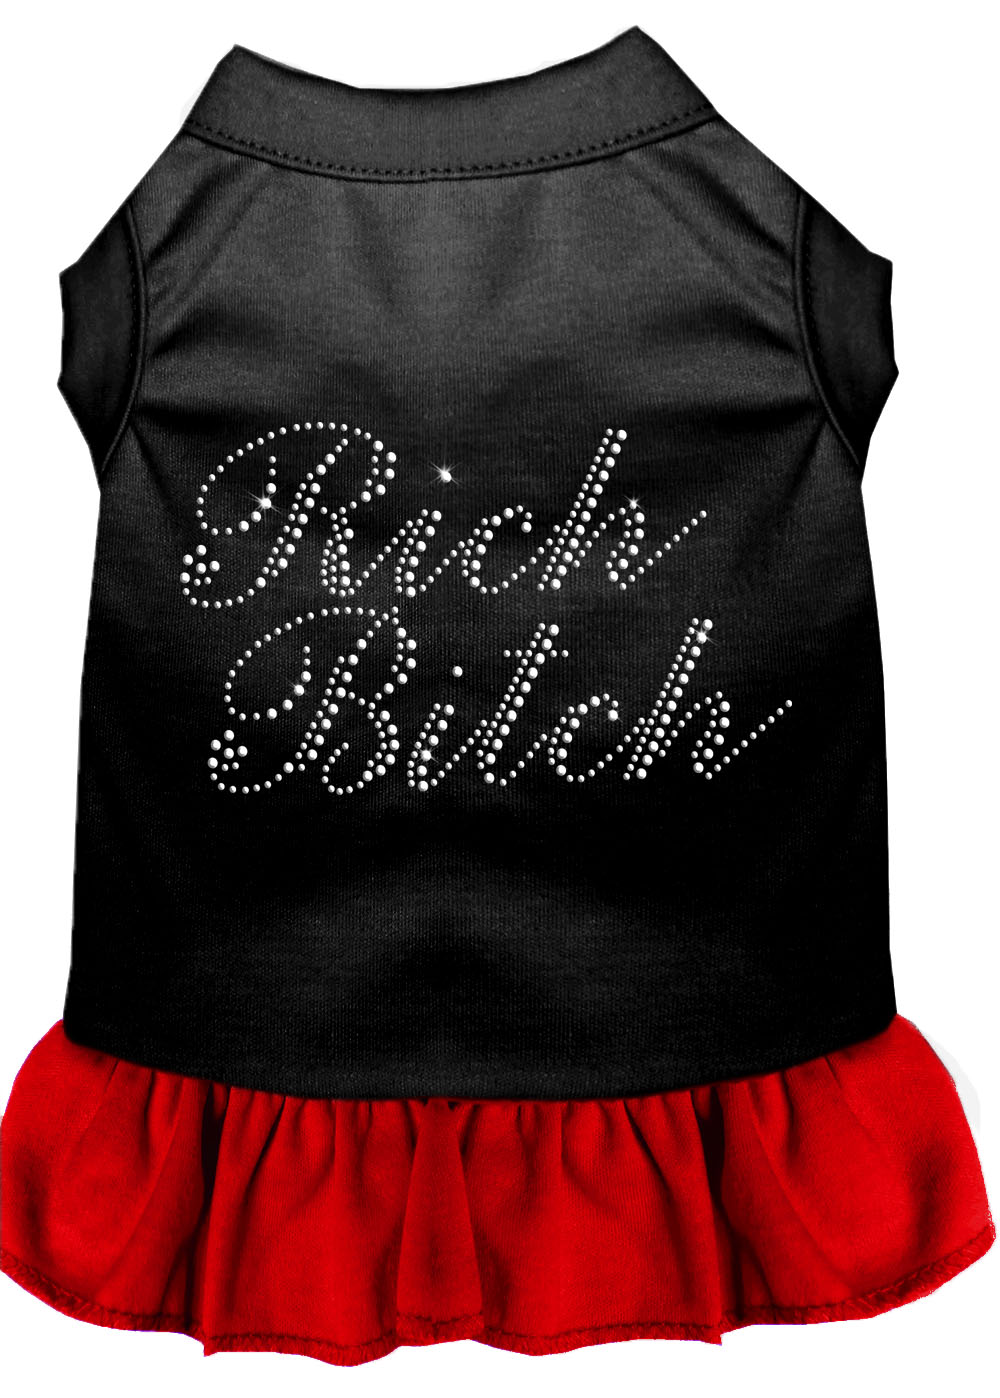 Rhinestone Rich Bitch Dress Black With Red Xl GreatEagleInc